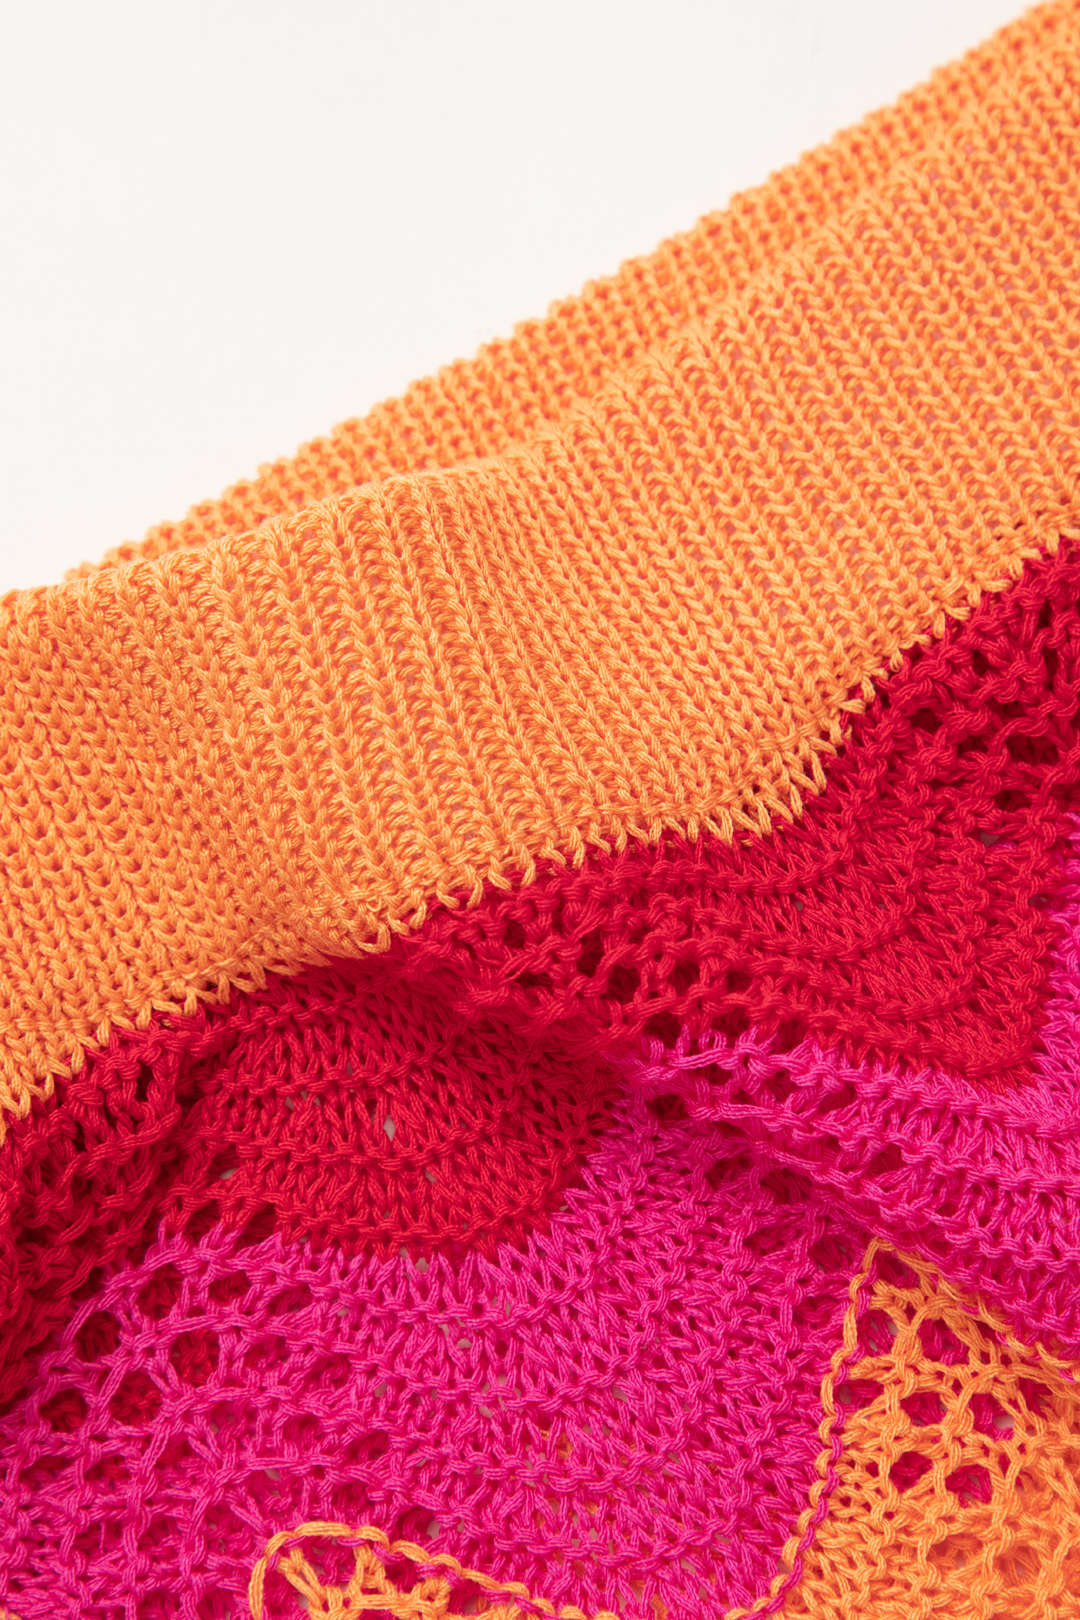 Color Block Crochet Knit Skirt